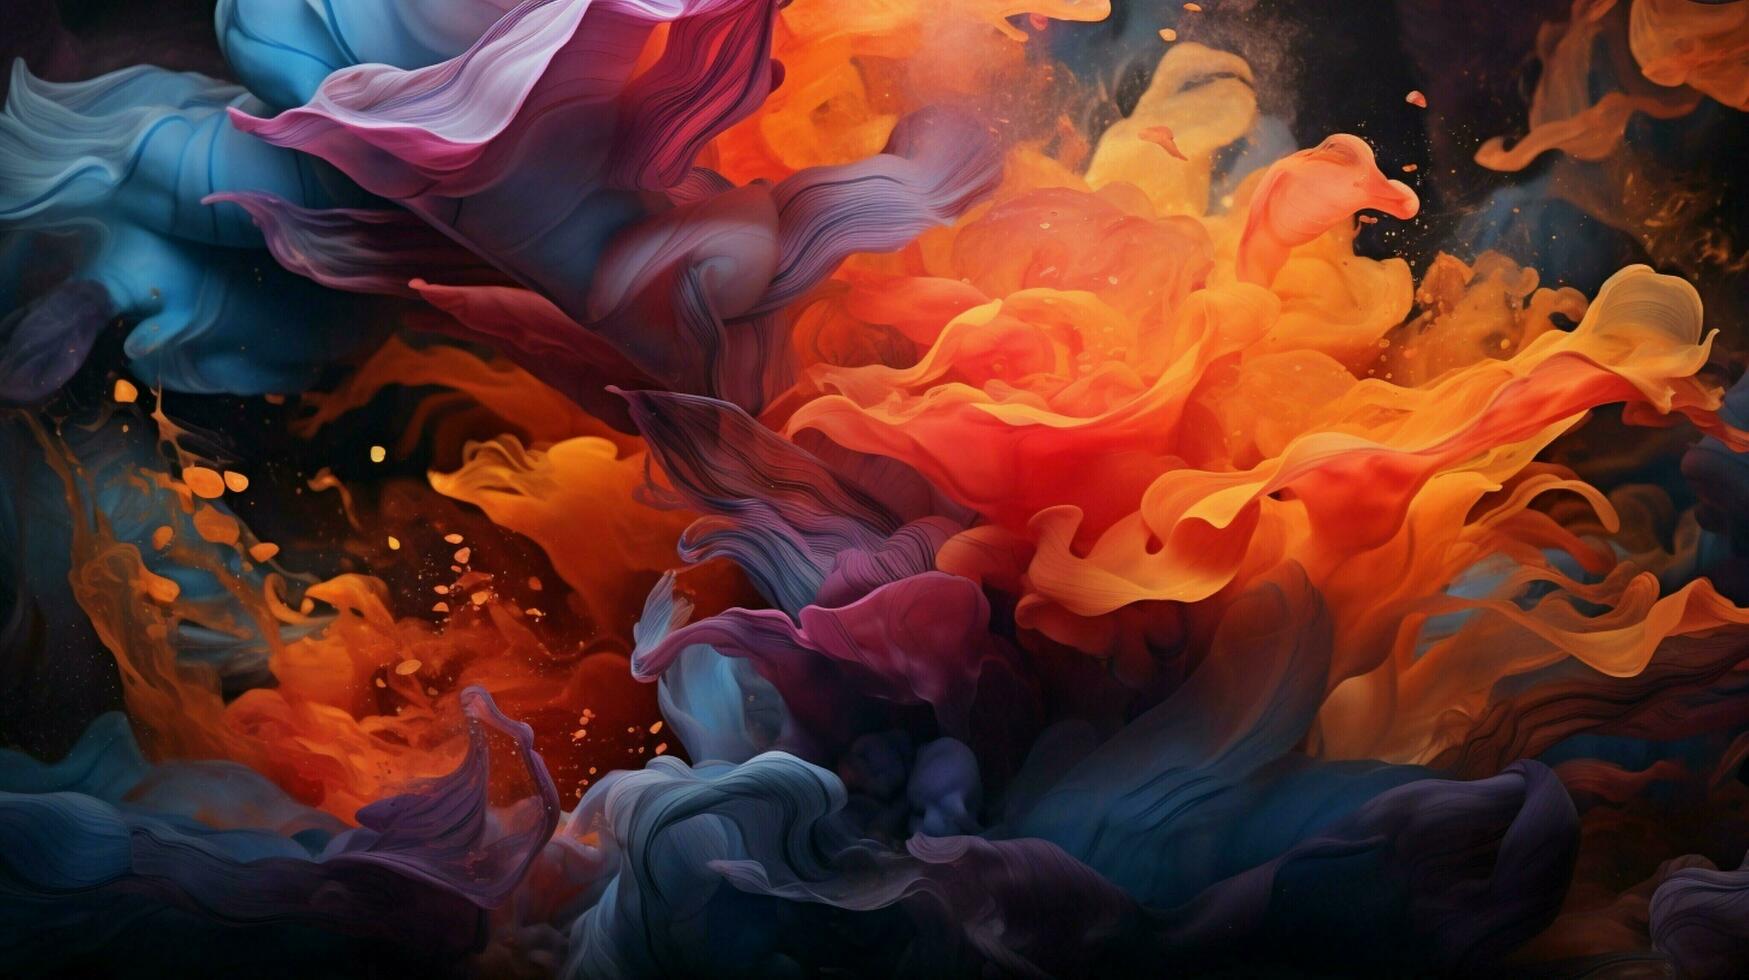 subacqueo caos vivace in profondità colori liscio flusso foto